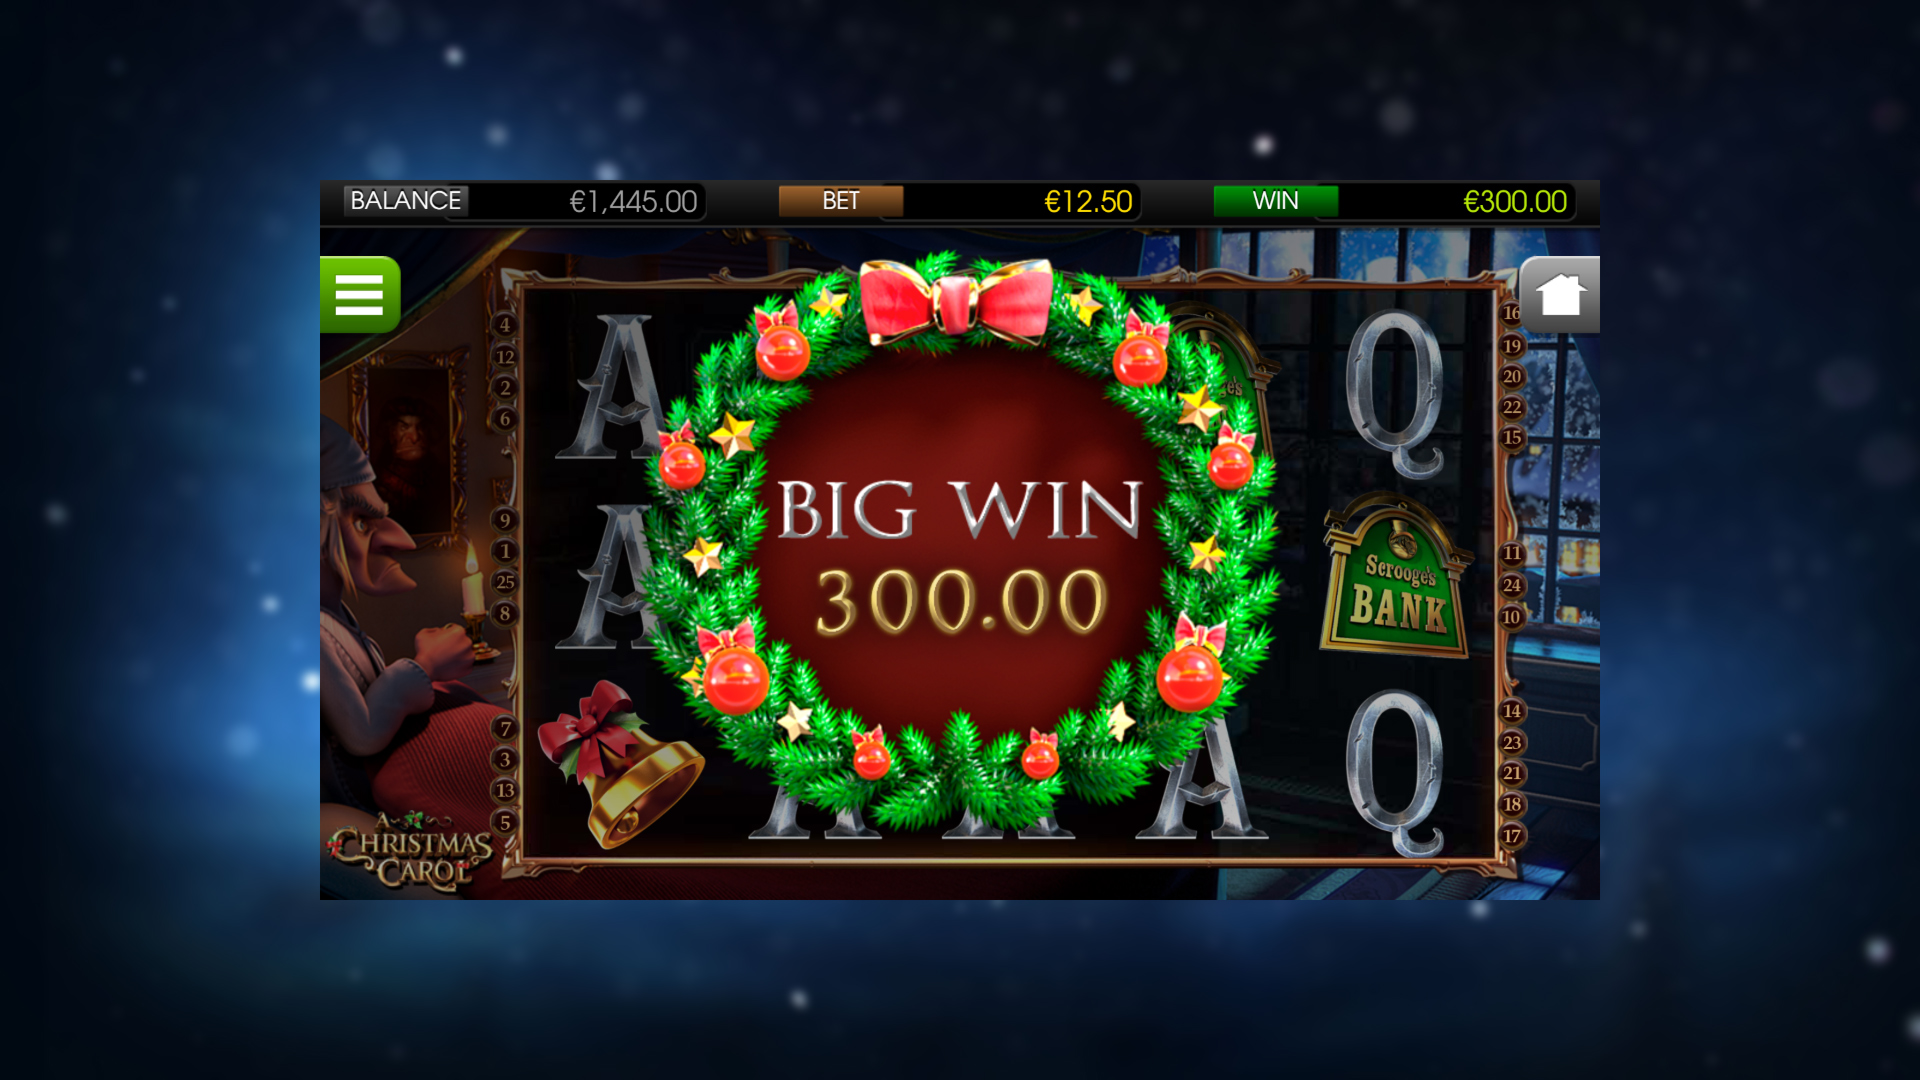 A Christmas Carol - Big Win